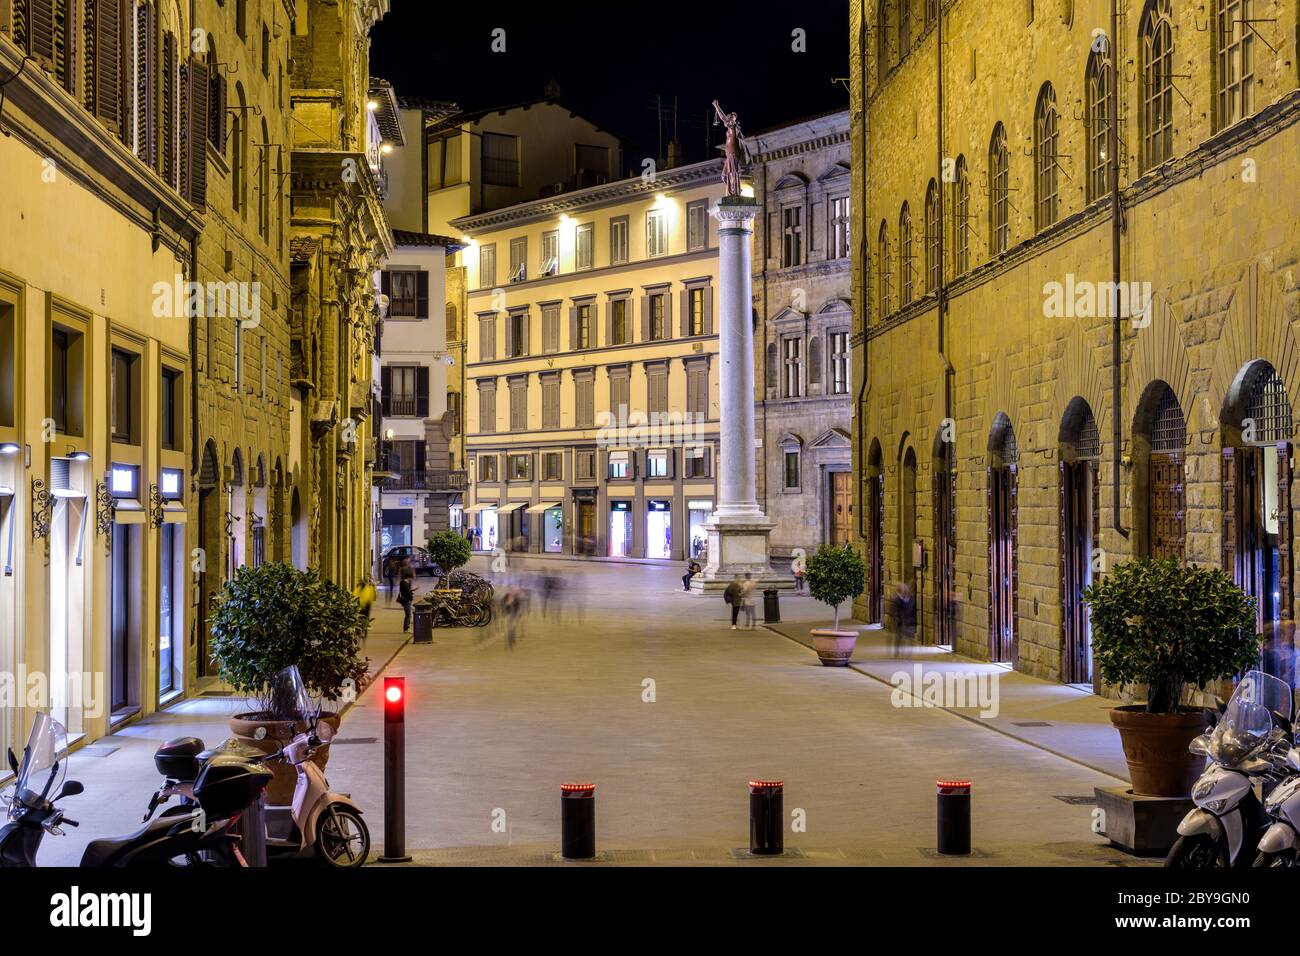 Piazza Santa Trinita - Nachtansicht der Piazza Santa Trinita mit einer antiken römischen Säule - Justizsäule in der Mitte, Florenz, Italien. Stockfoto